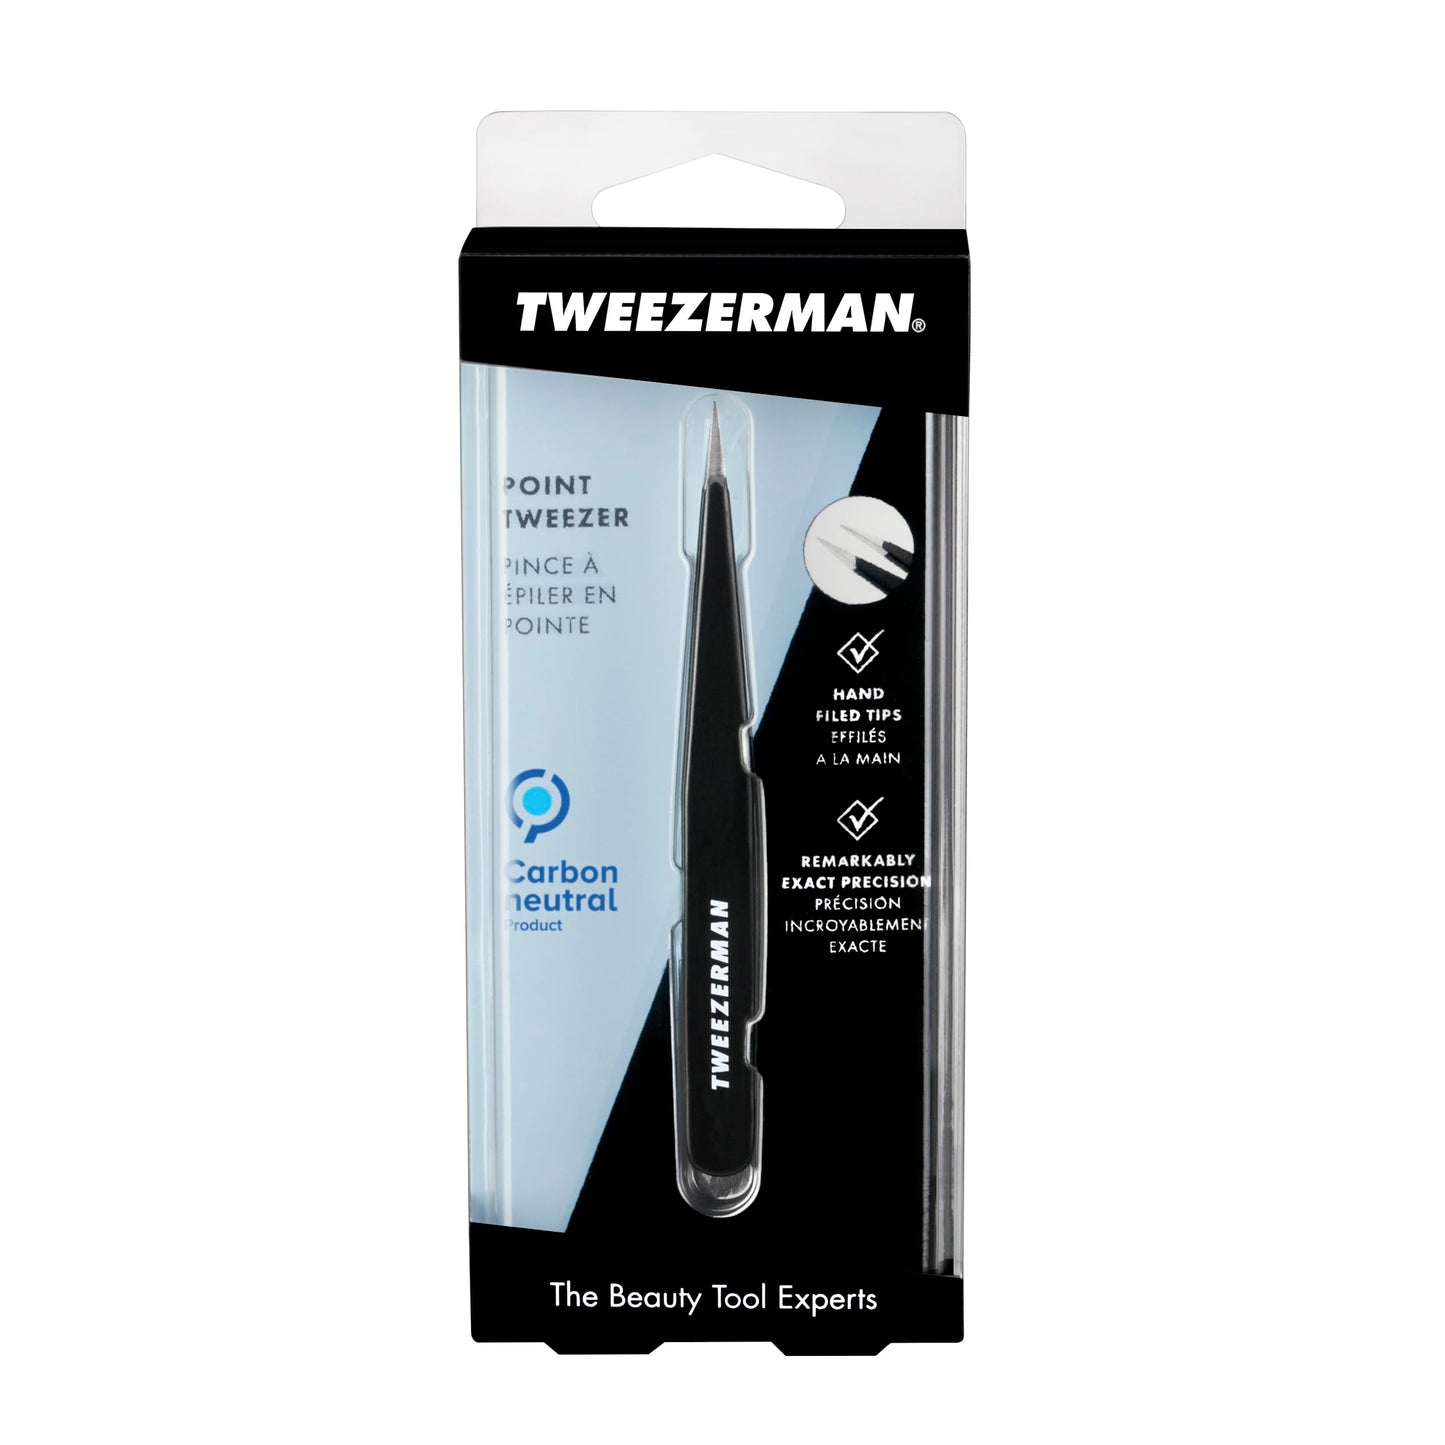 Tweezerman Point Tweezer - Model No. 24-BR, Midnight Sky, 1 Count